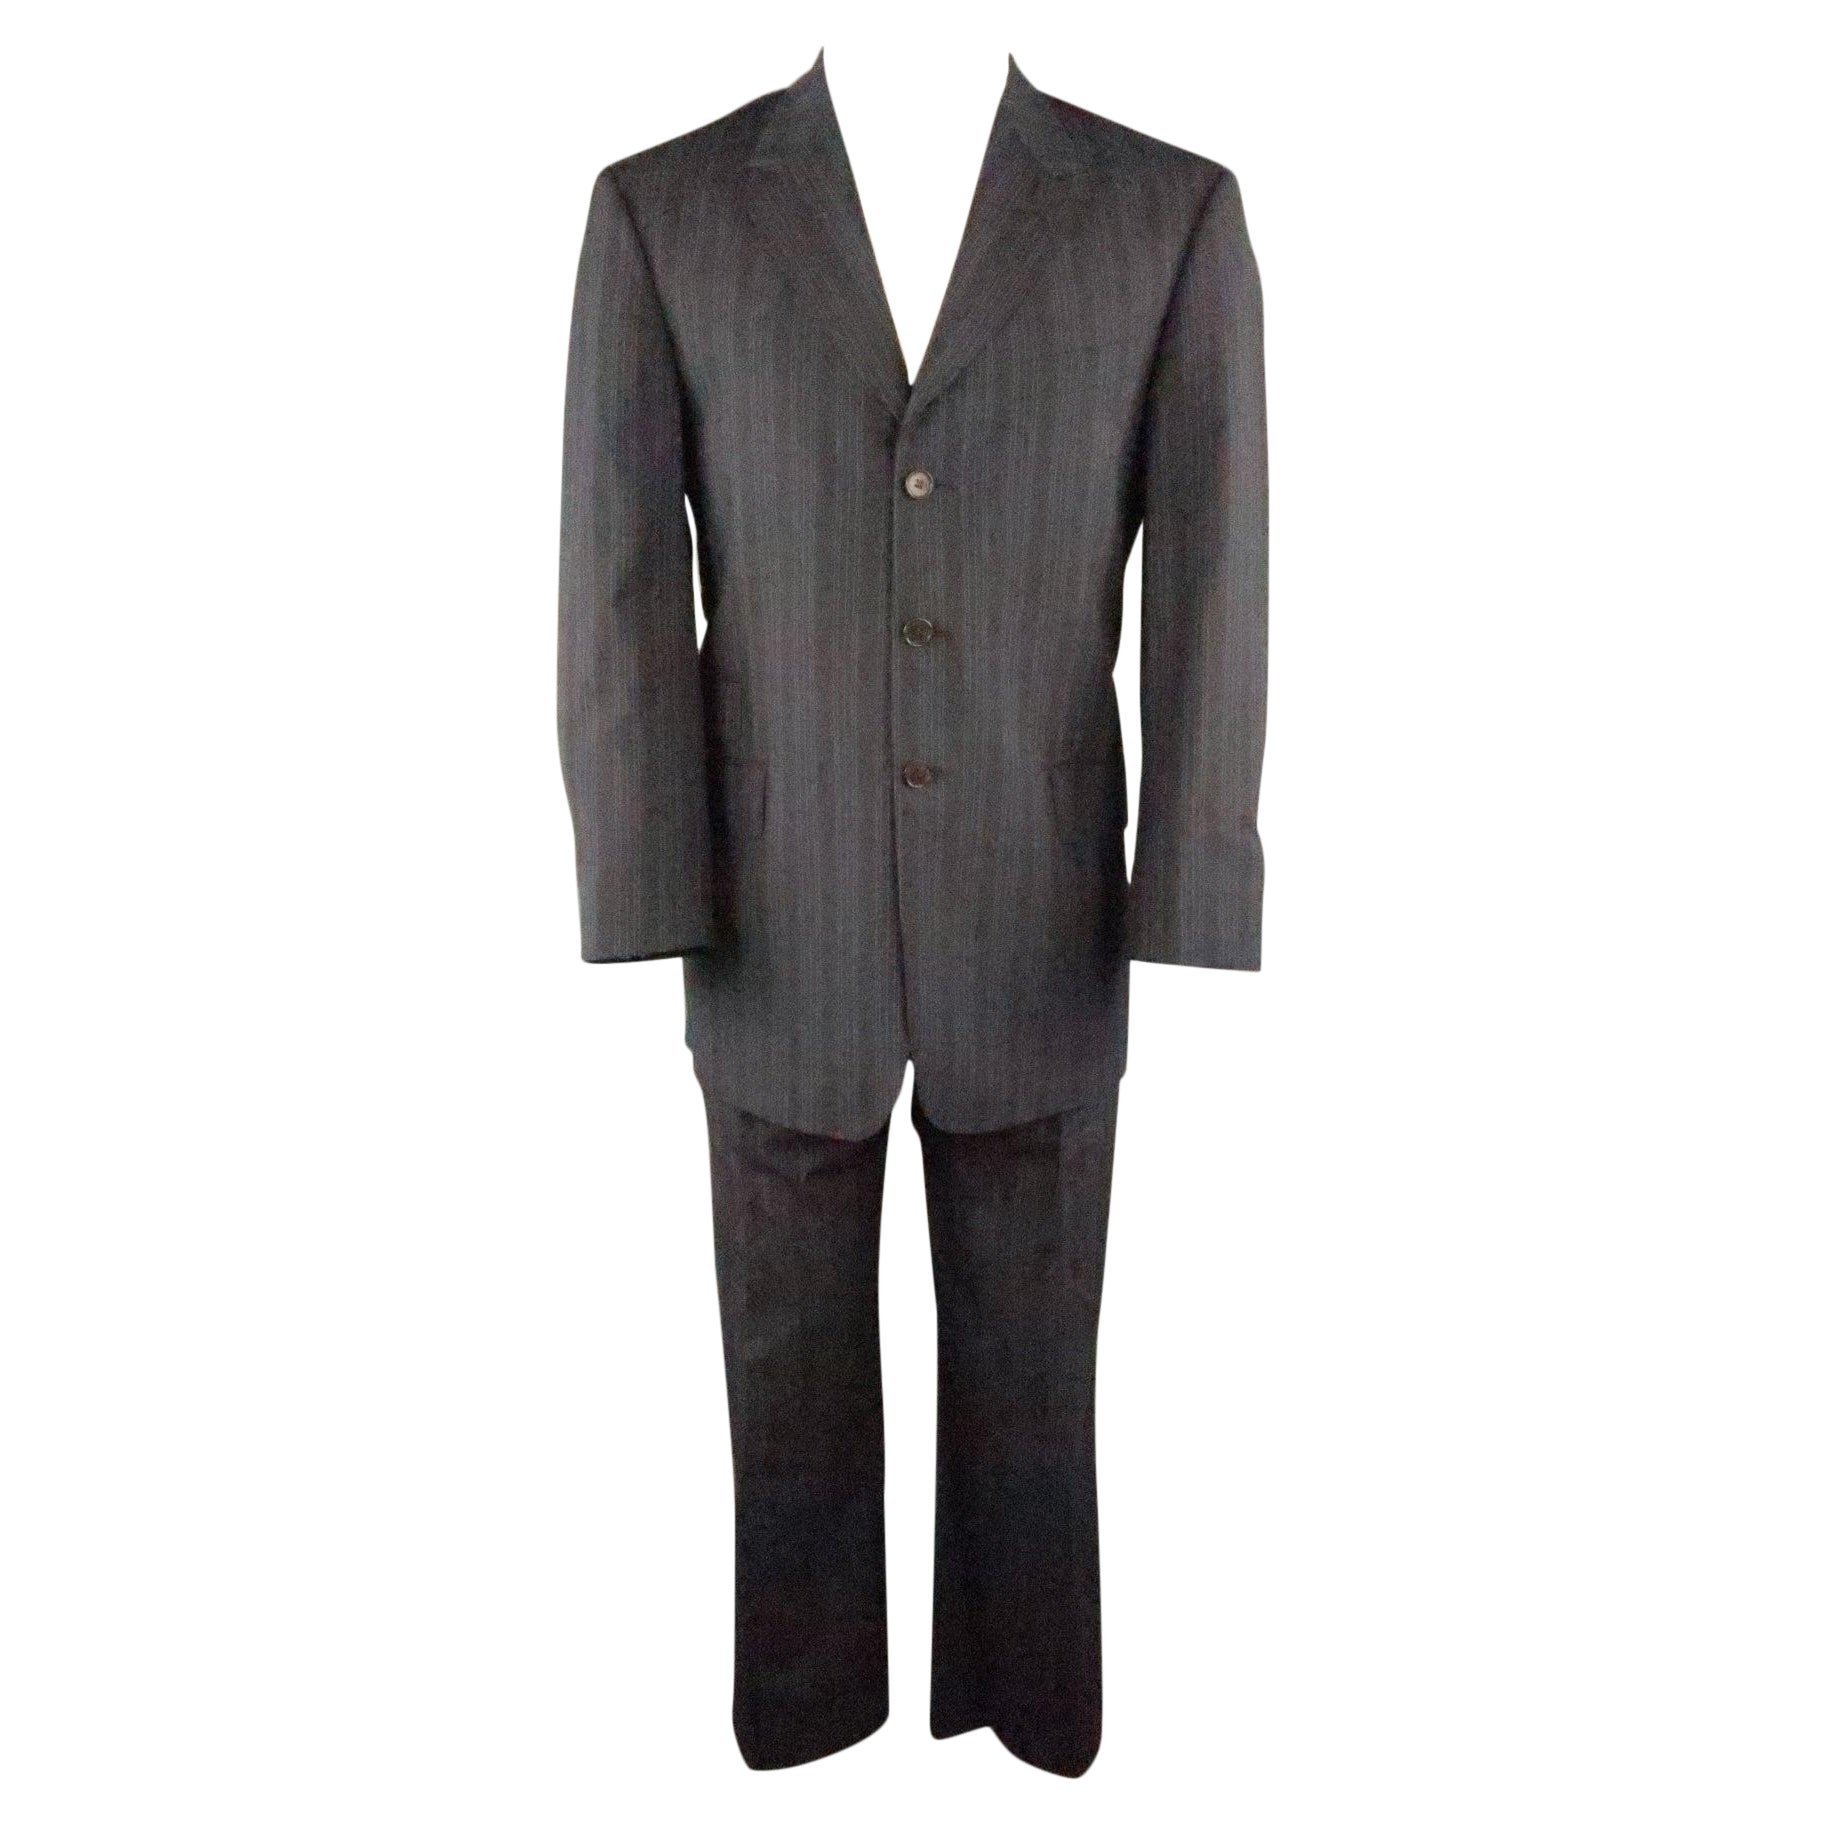 PAUL SMITH Chest Size 40 Gray & Blue Stripe Viscose Notch Lapel 34 30 Suit For Sale